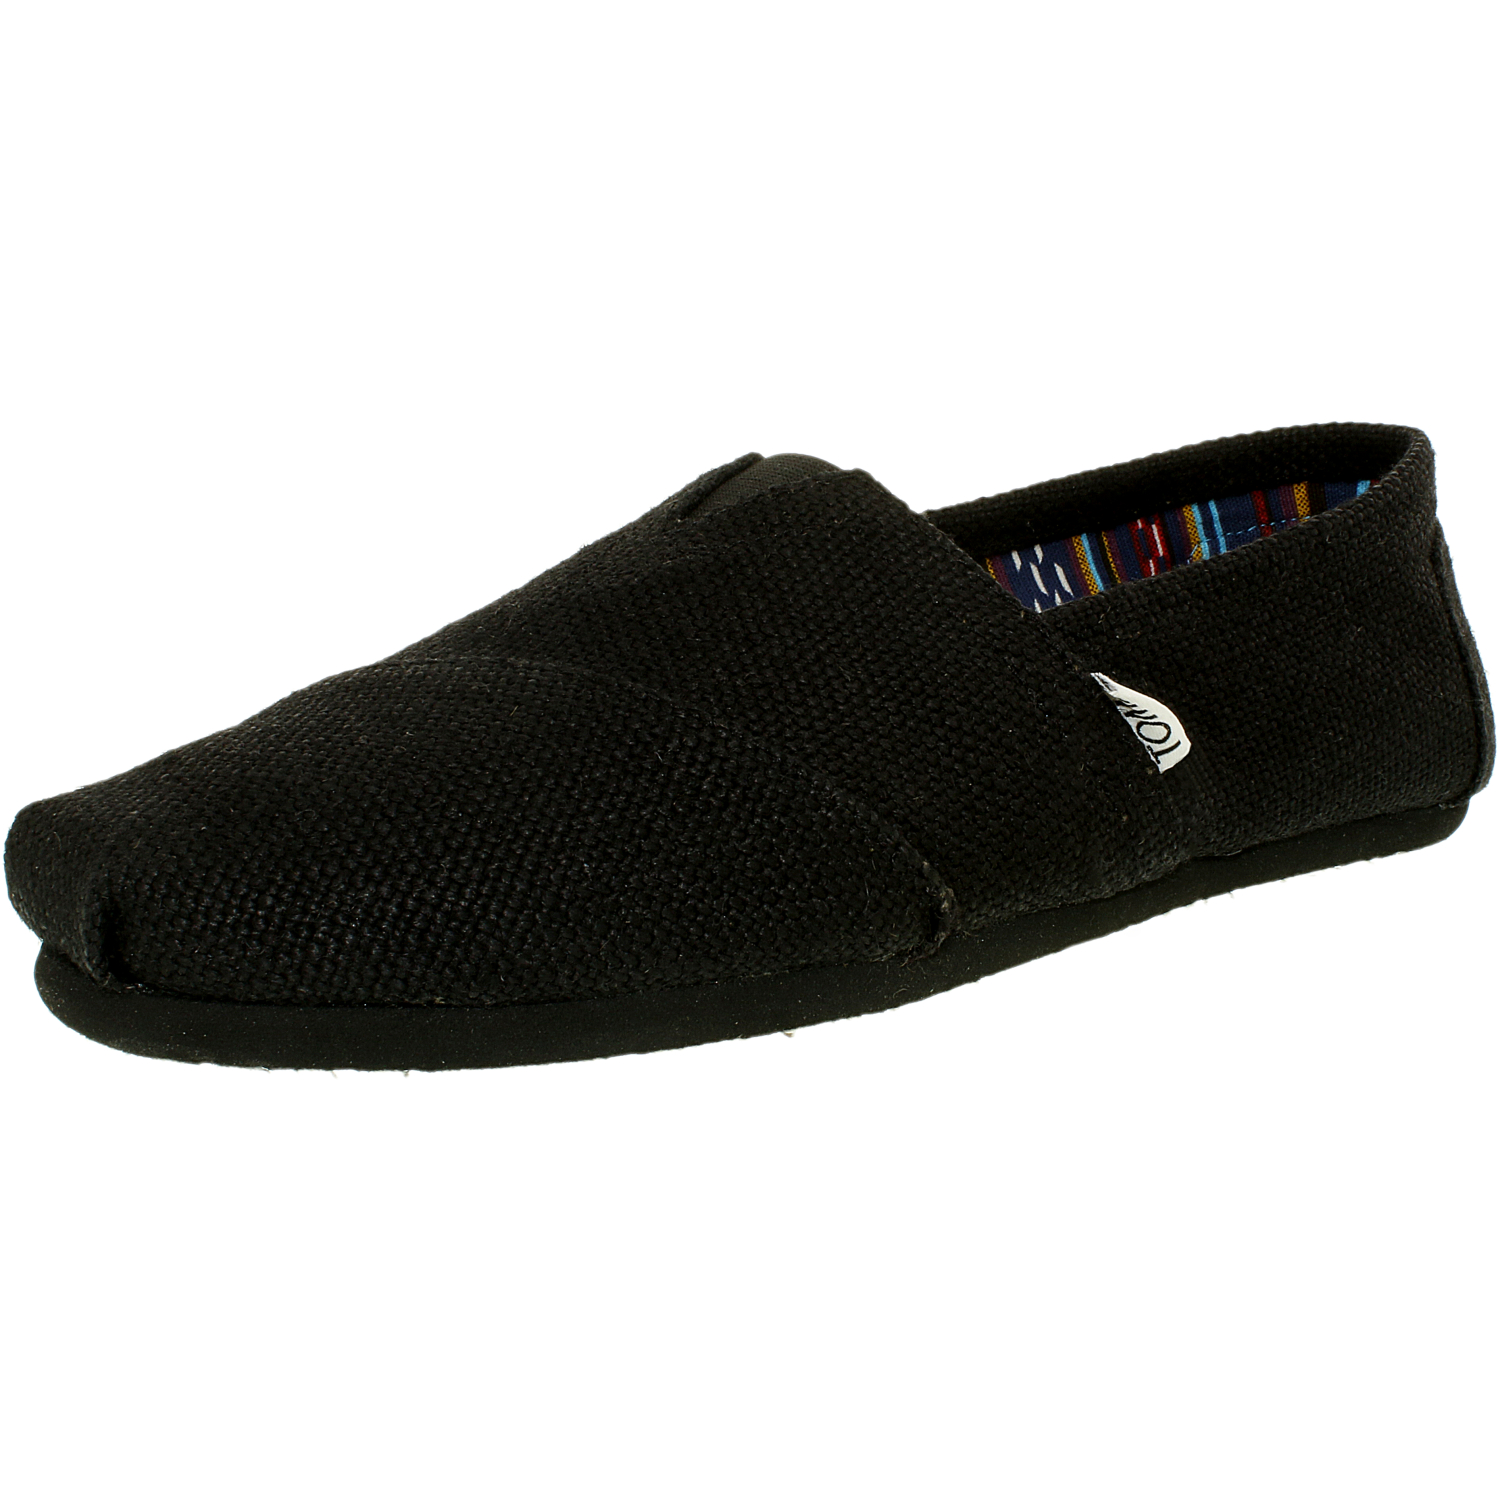 TOMS Men's Alpargata Burlap Ankle-High Fabric Flat Shoe